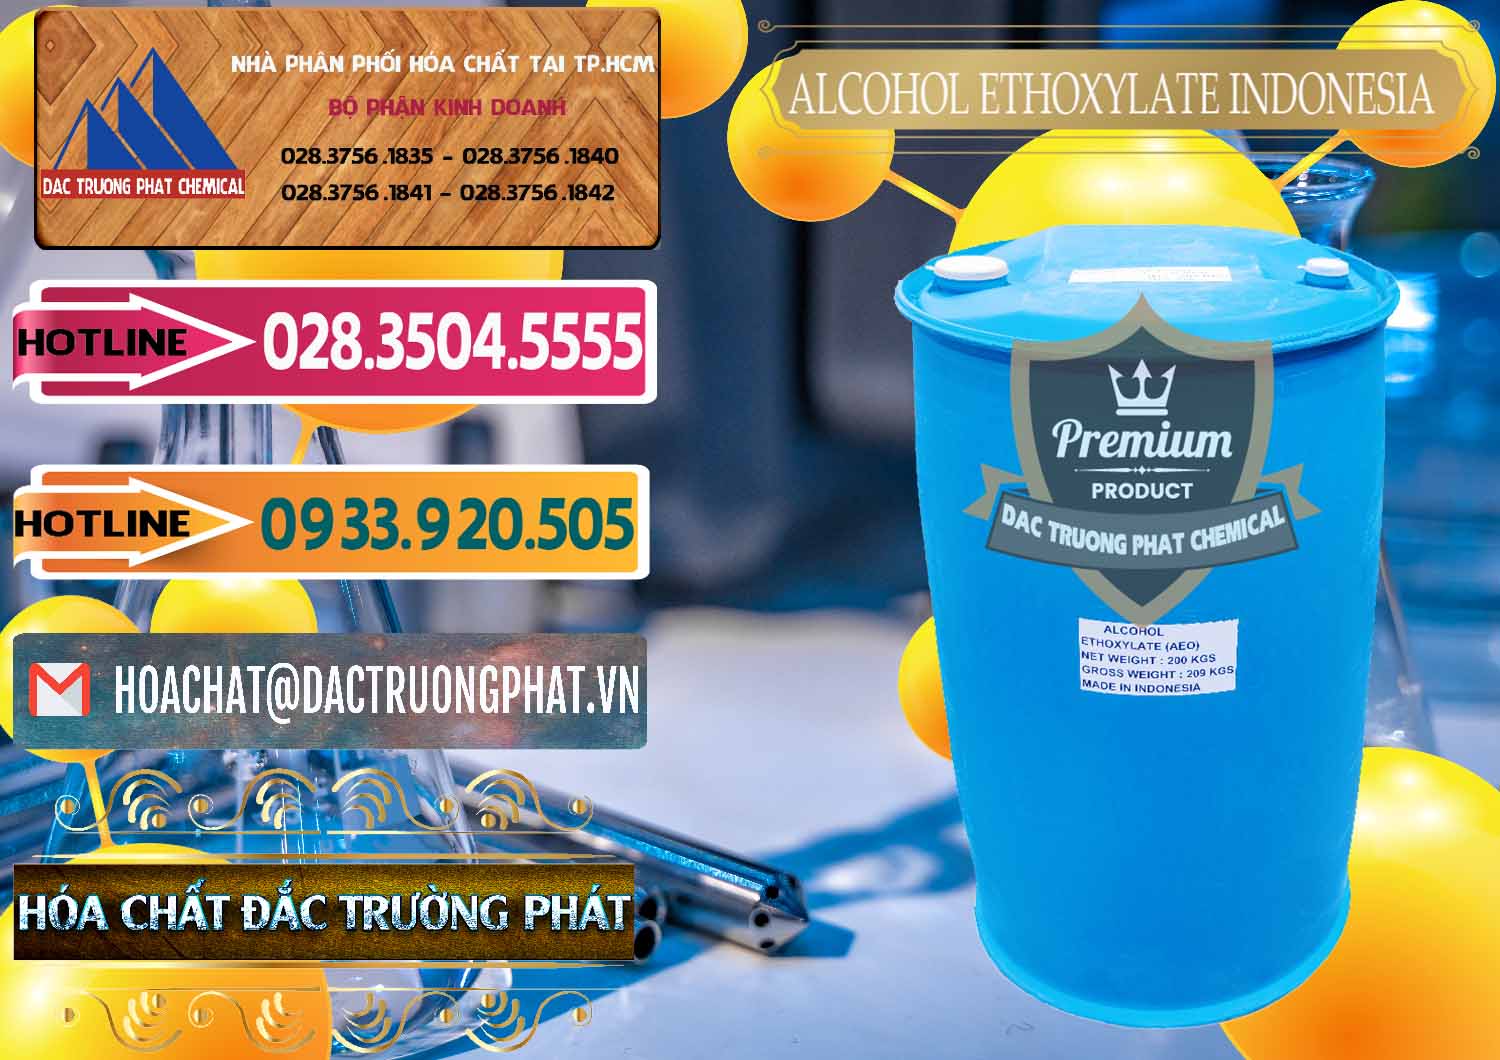 Bán ( cung ứng ) Alcohol Ethoxylate Indonesia - 0308 - Cty cung cấp _ phân phối hóa chất tại TP.HCM - dactruongphat.vn